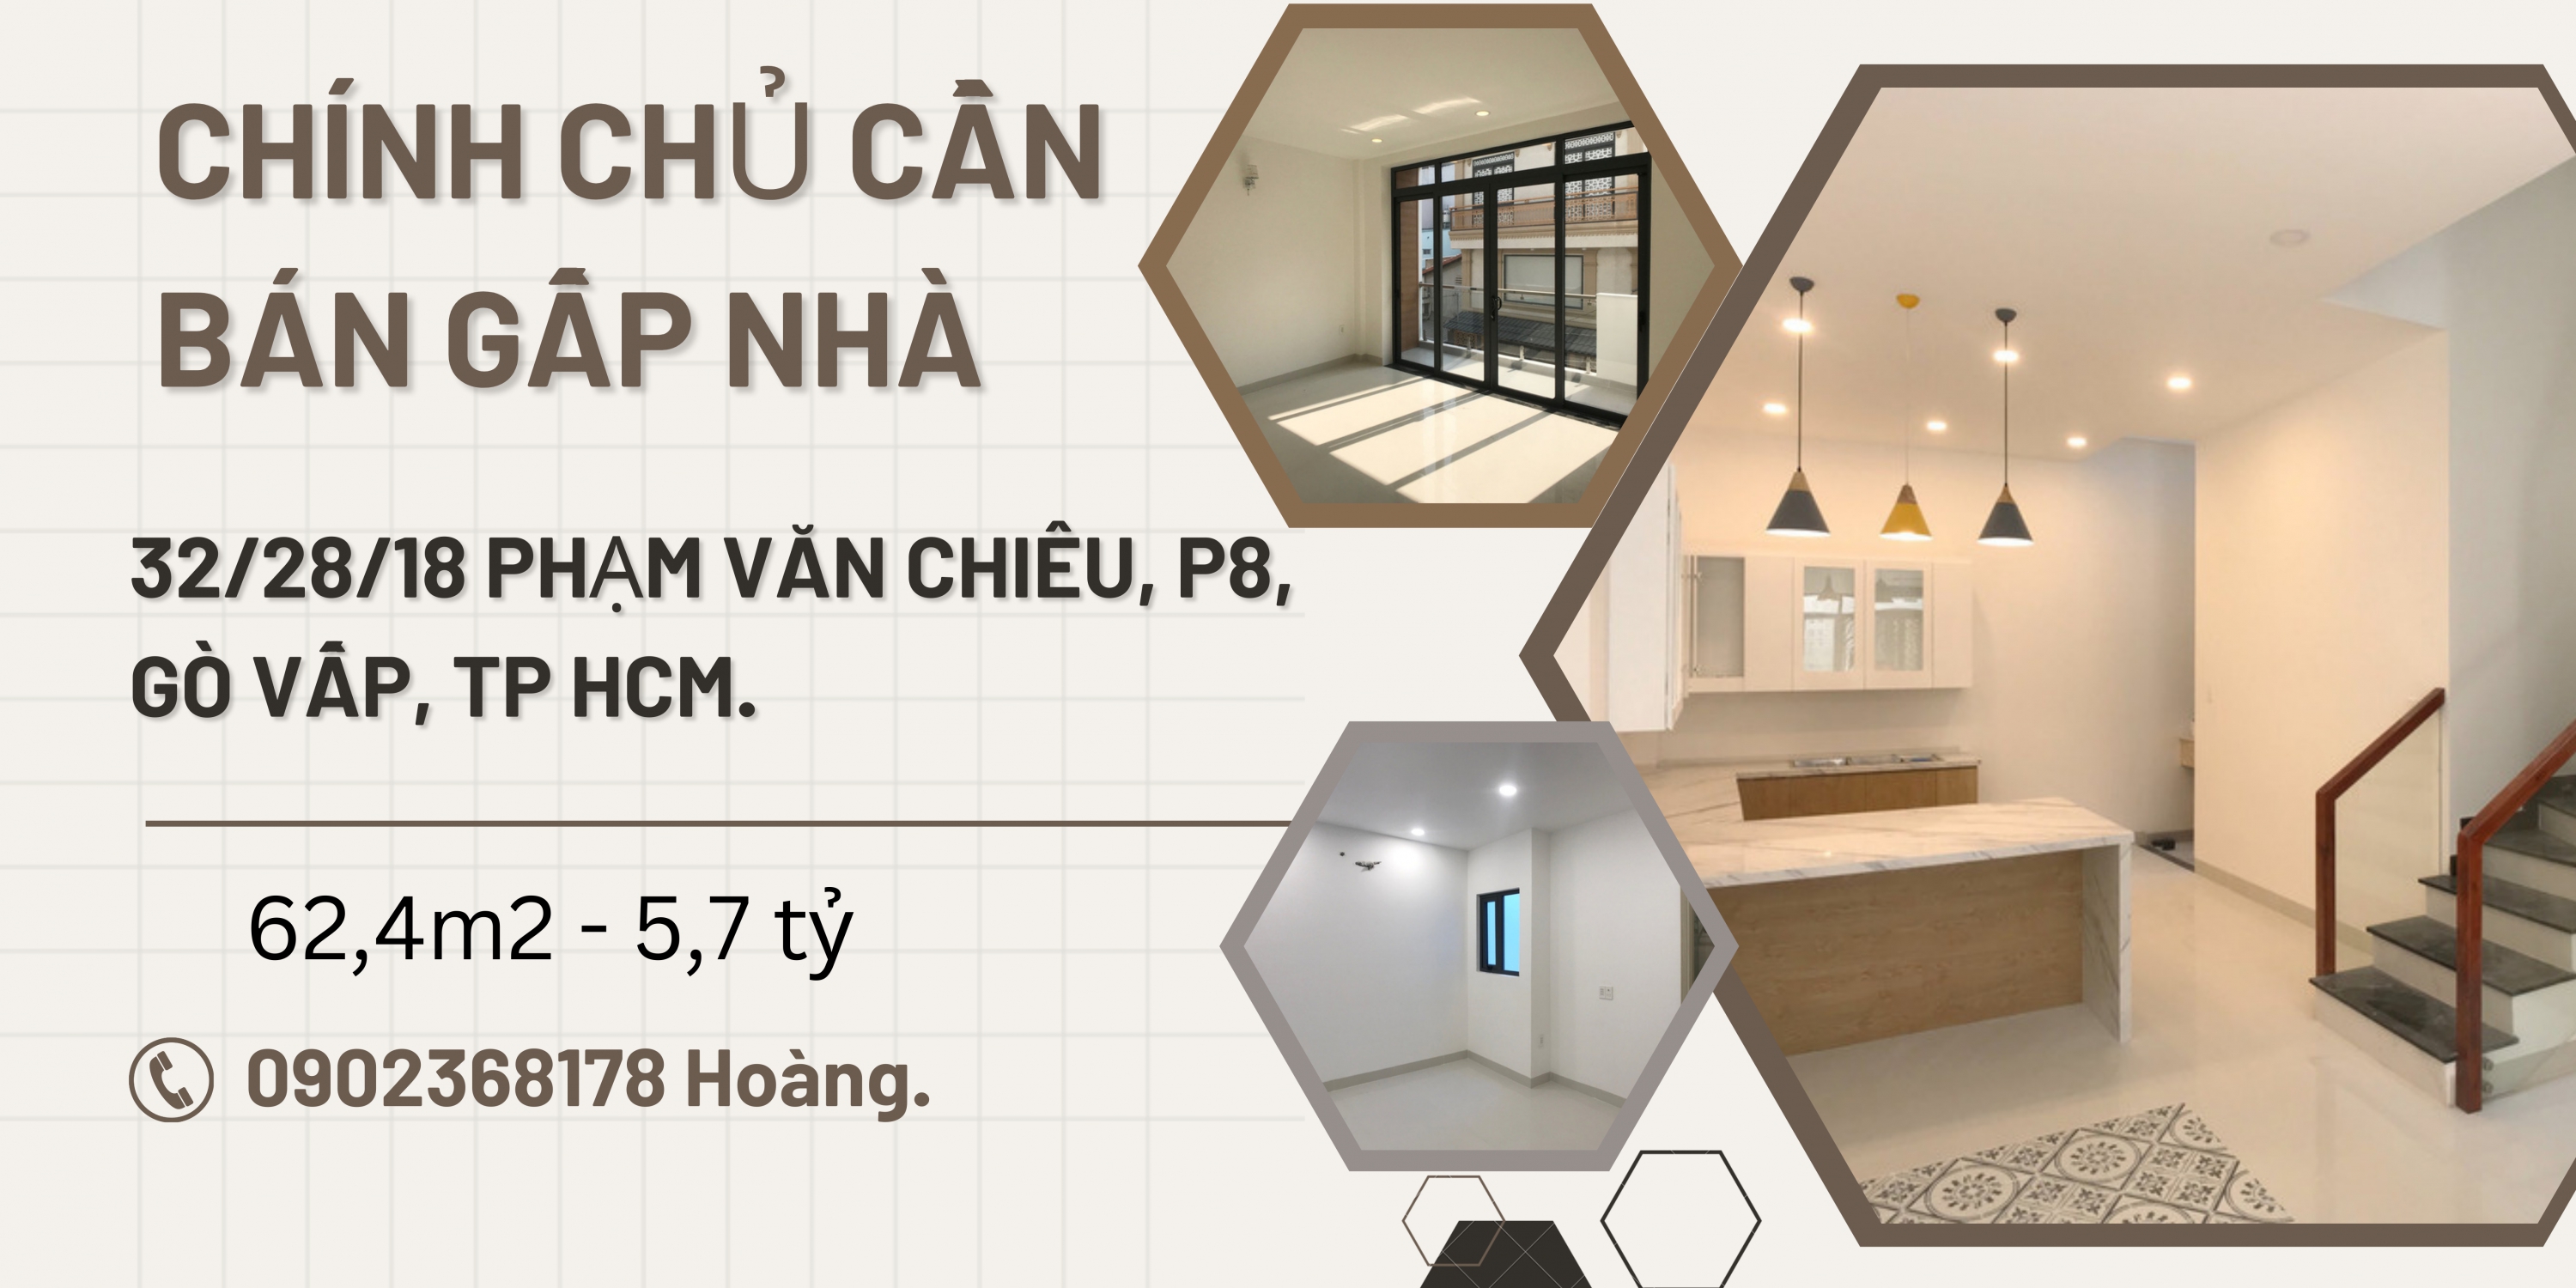 https://infonhadat.com.vn/chinh-chu-can-ban-gap-nha-32-28-18-pham-van-chieu-p8-go-vap-tp-hcm-j38036.html